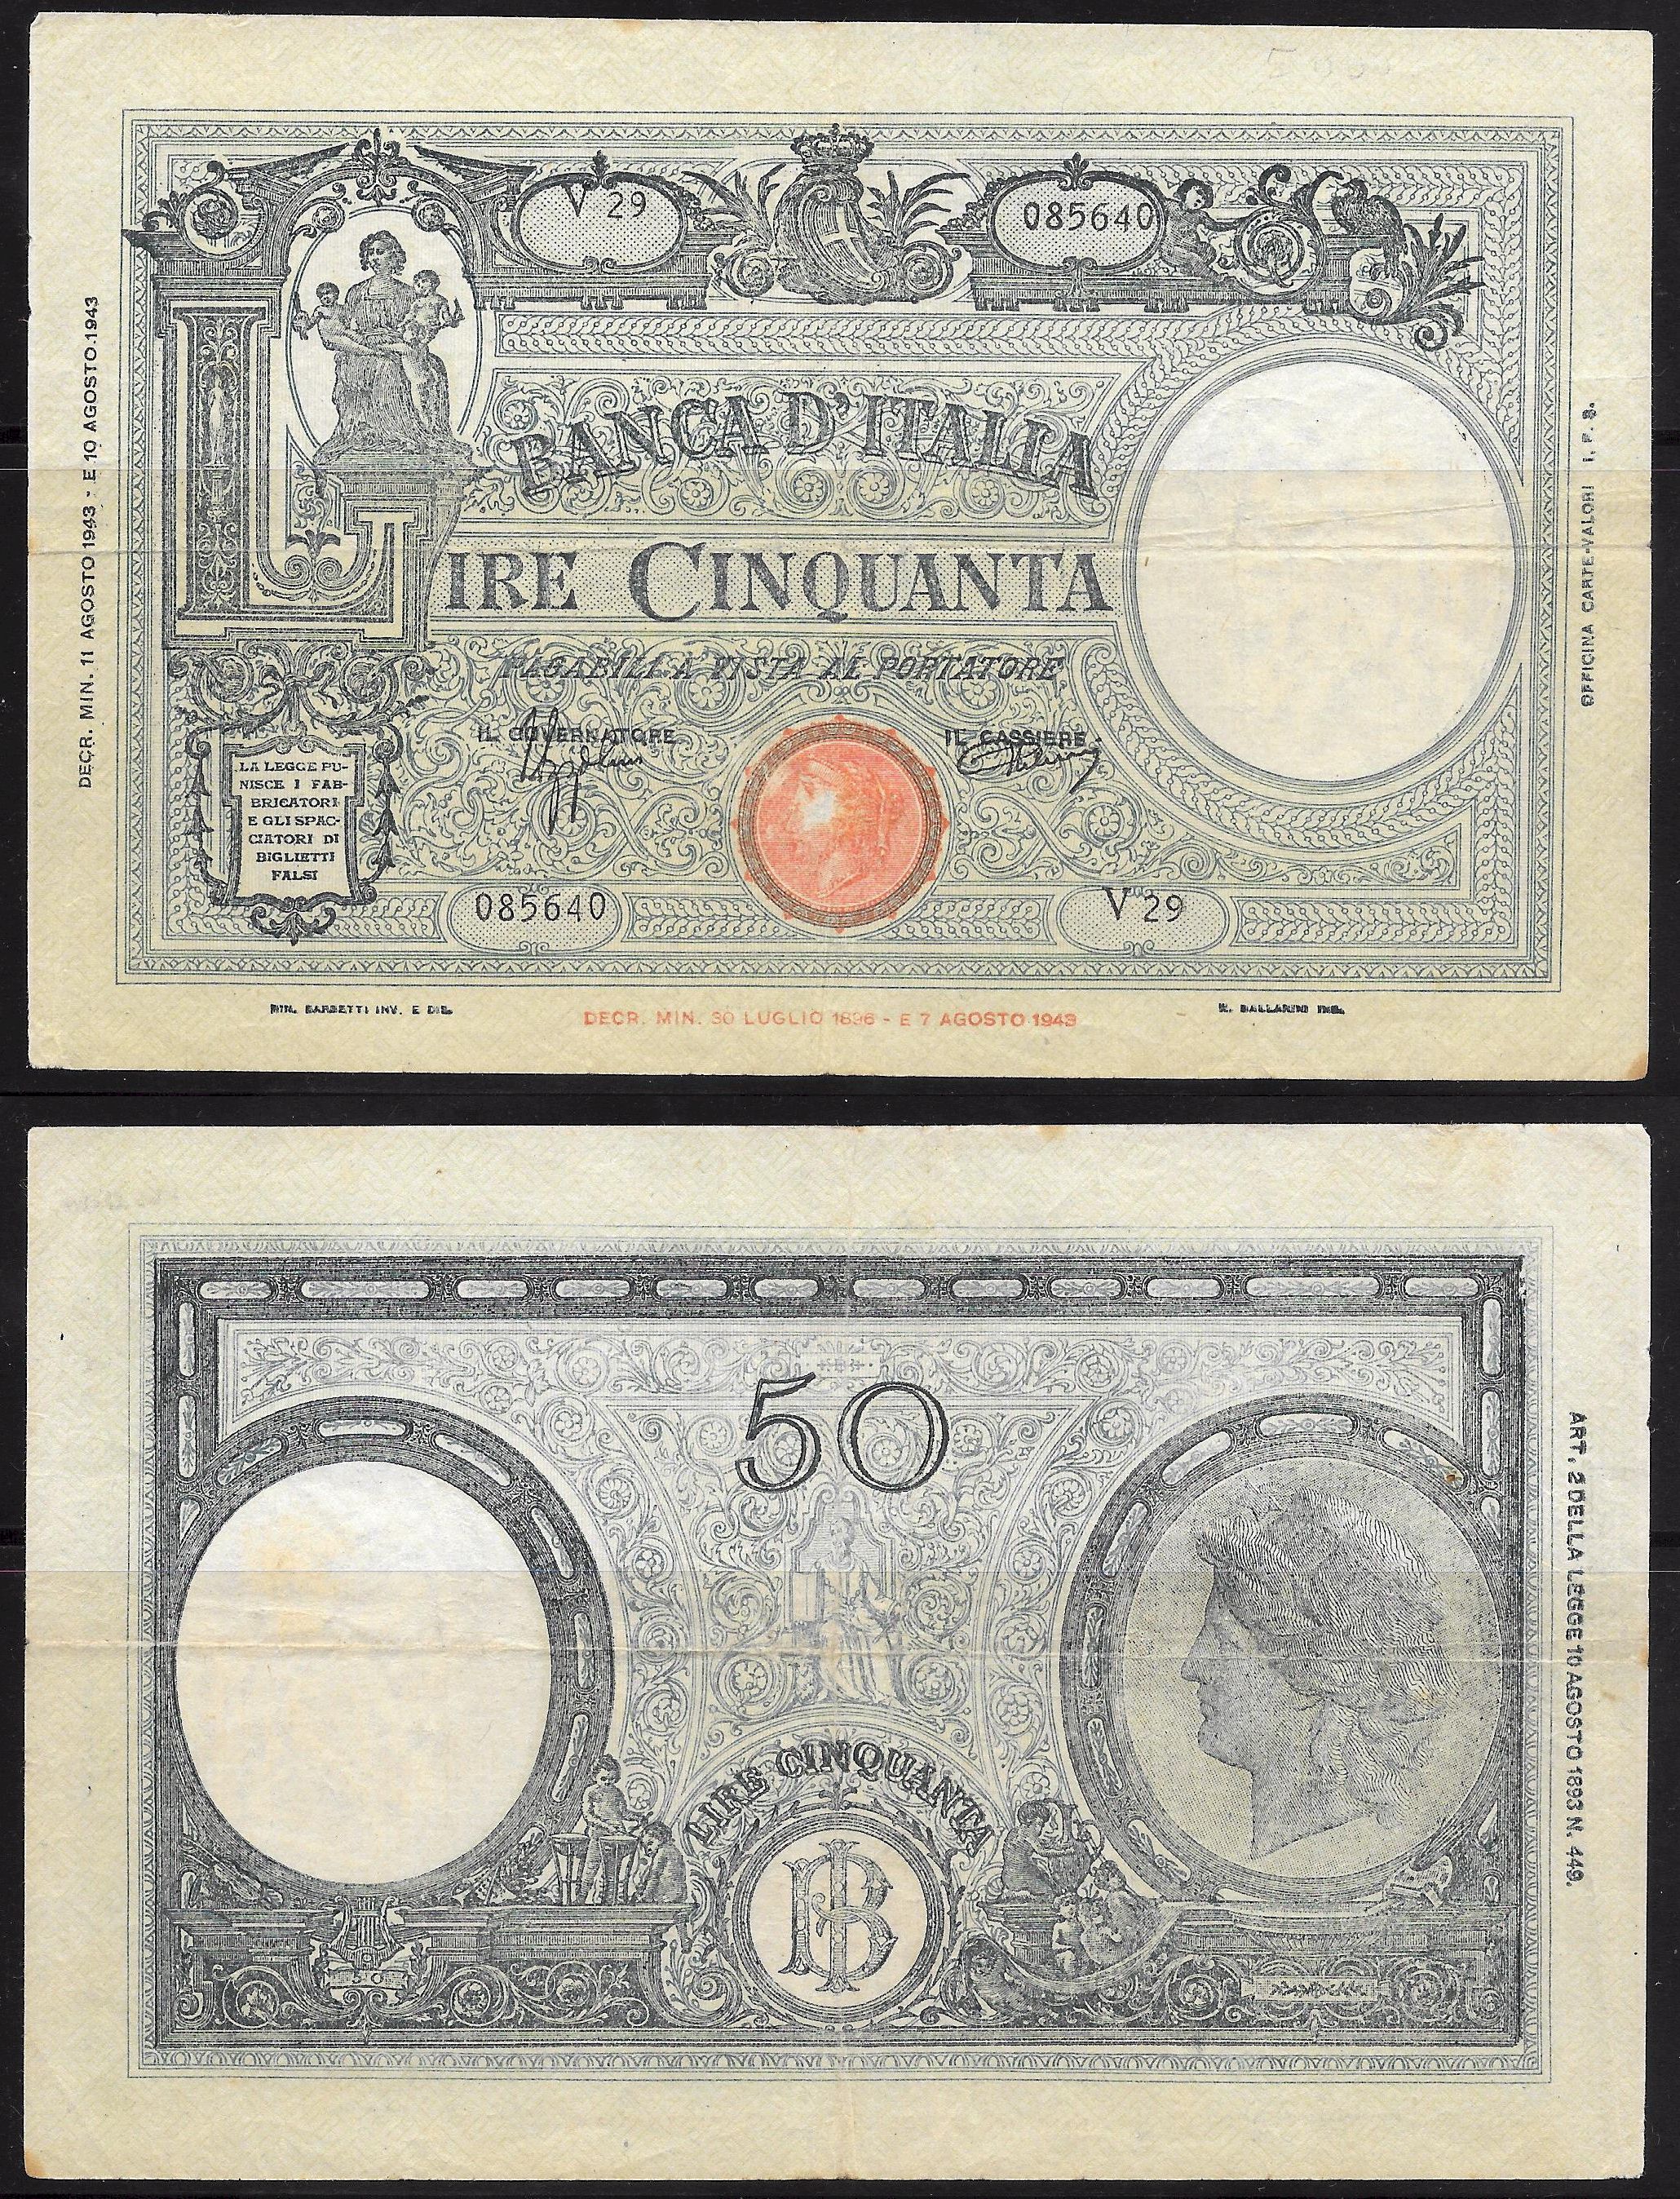  Vittorio Emanuele III - cinquanta lire -dec. min. 11-08-1943